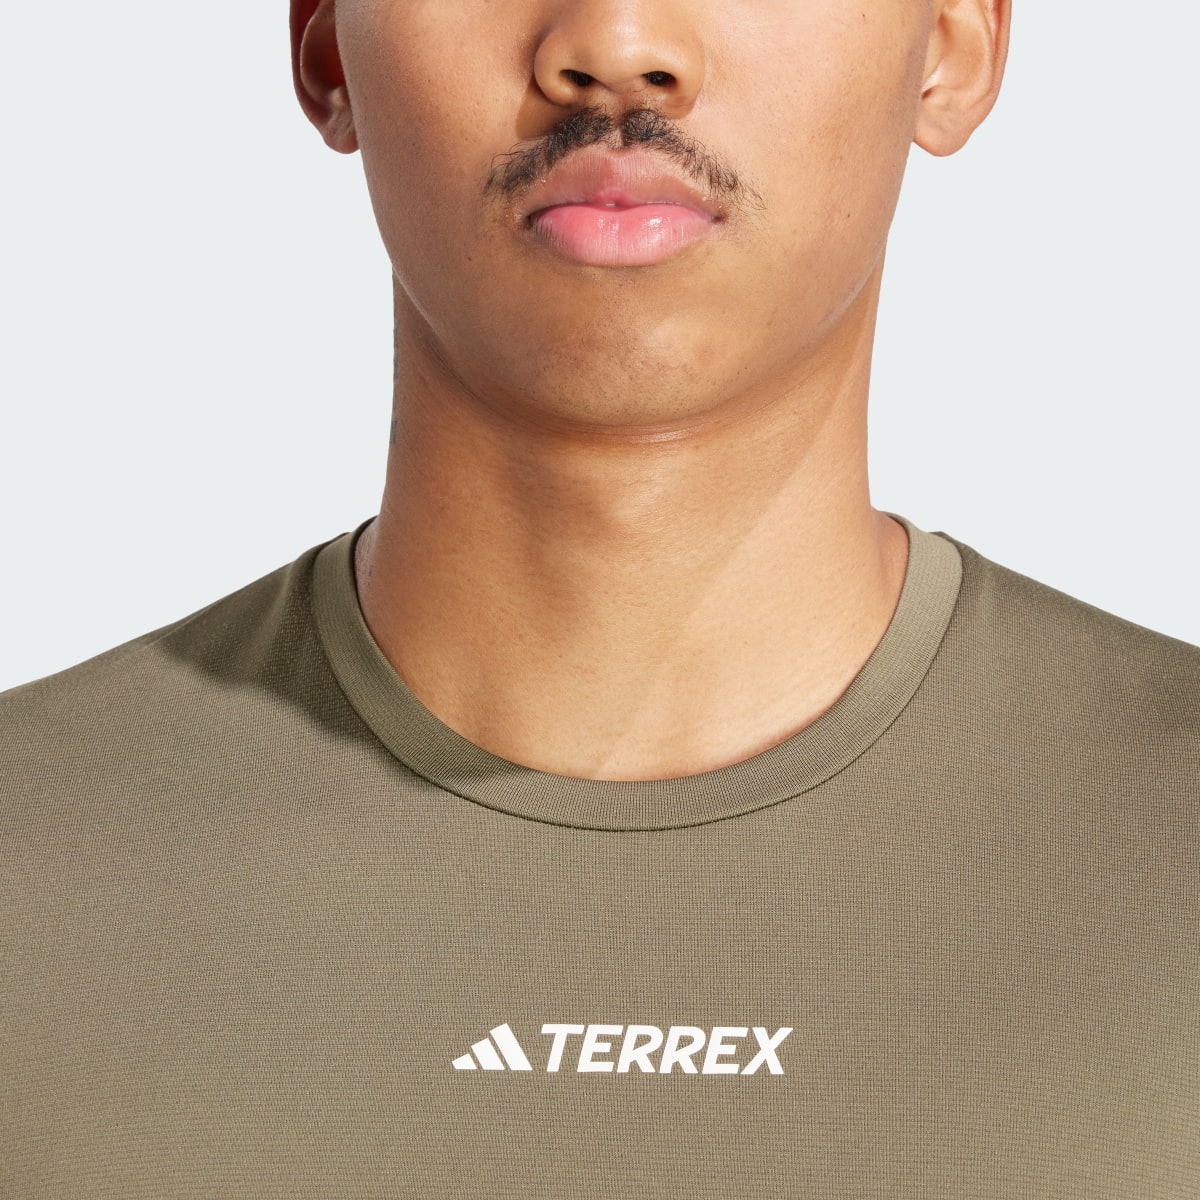 Adidas T-shirt Terrex Multi. 7